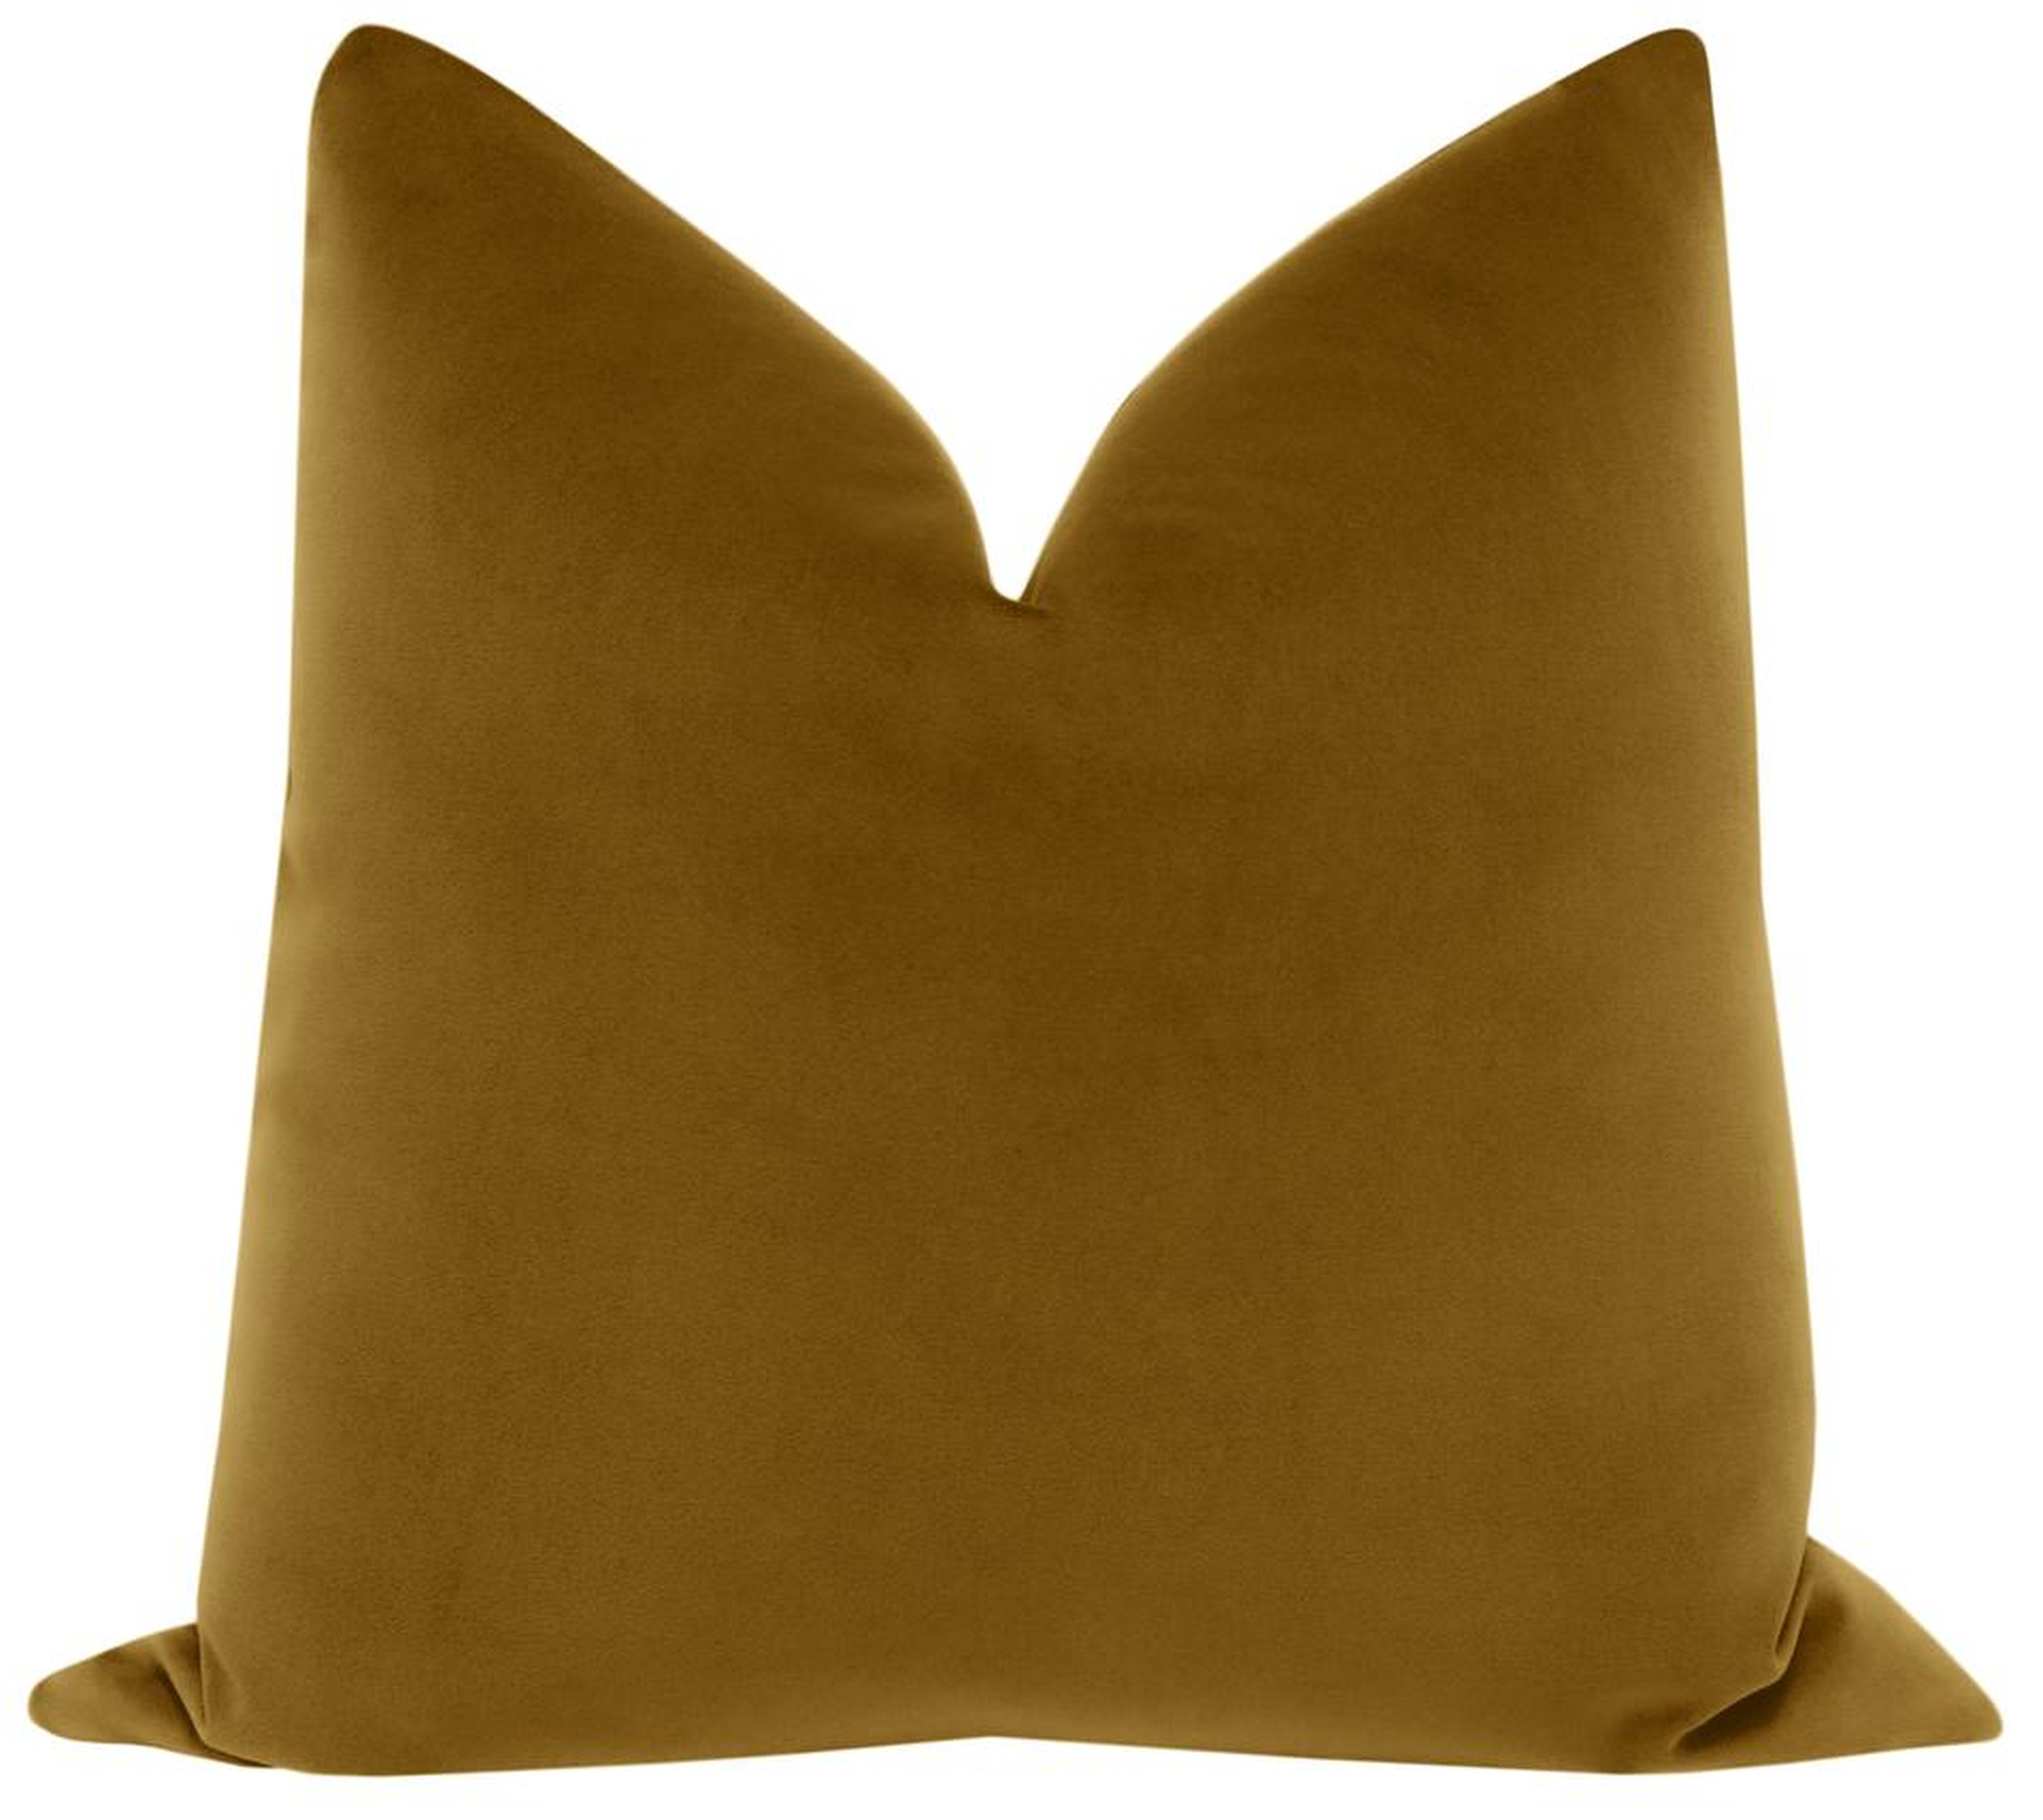 Sonoma Velvet Pillow Cover, Marrakesh Gold, 22" x 22" - Little Design Company